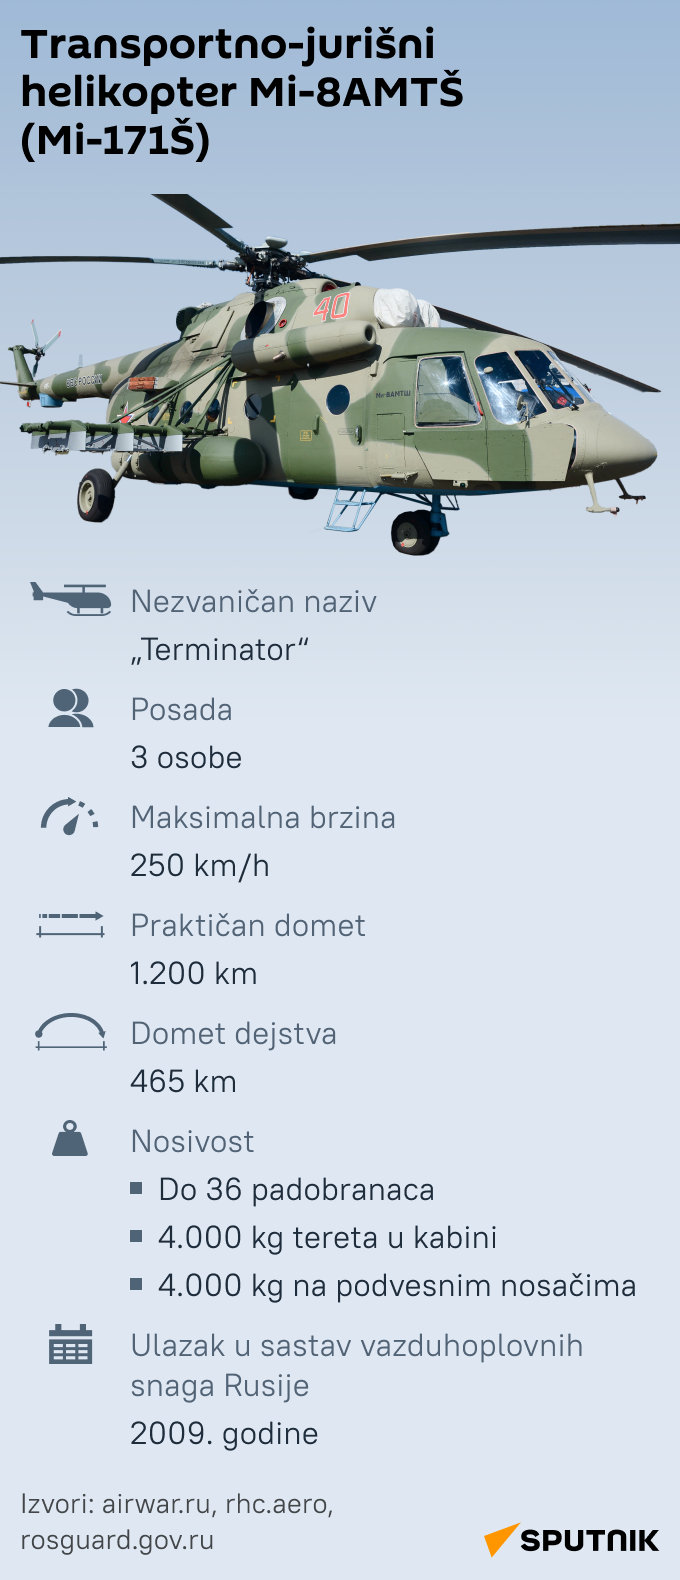 INFOGRAFIKA Transportno-jurišni helikopter Mi-8AMTŠ (Mi-171Š) latinica mob - Sputnik Srbija